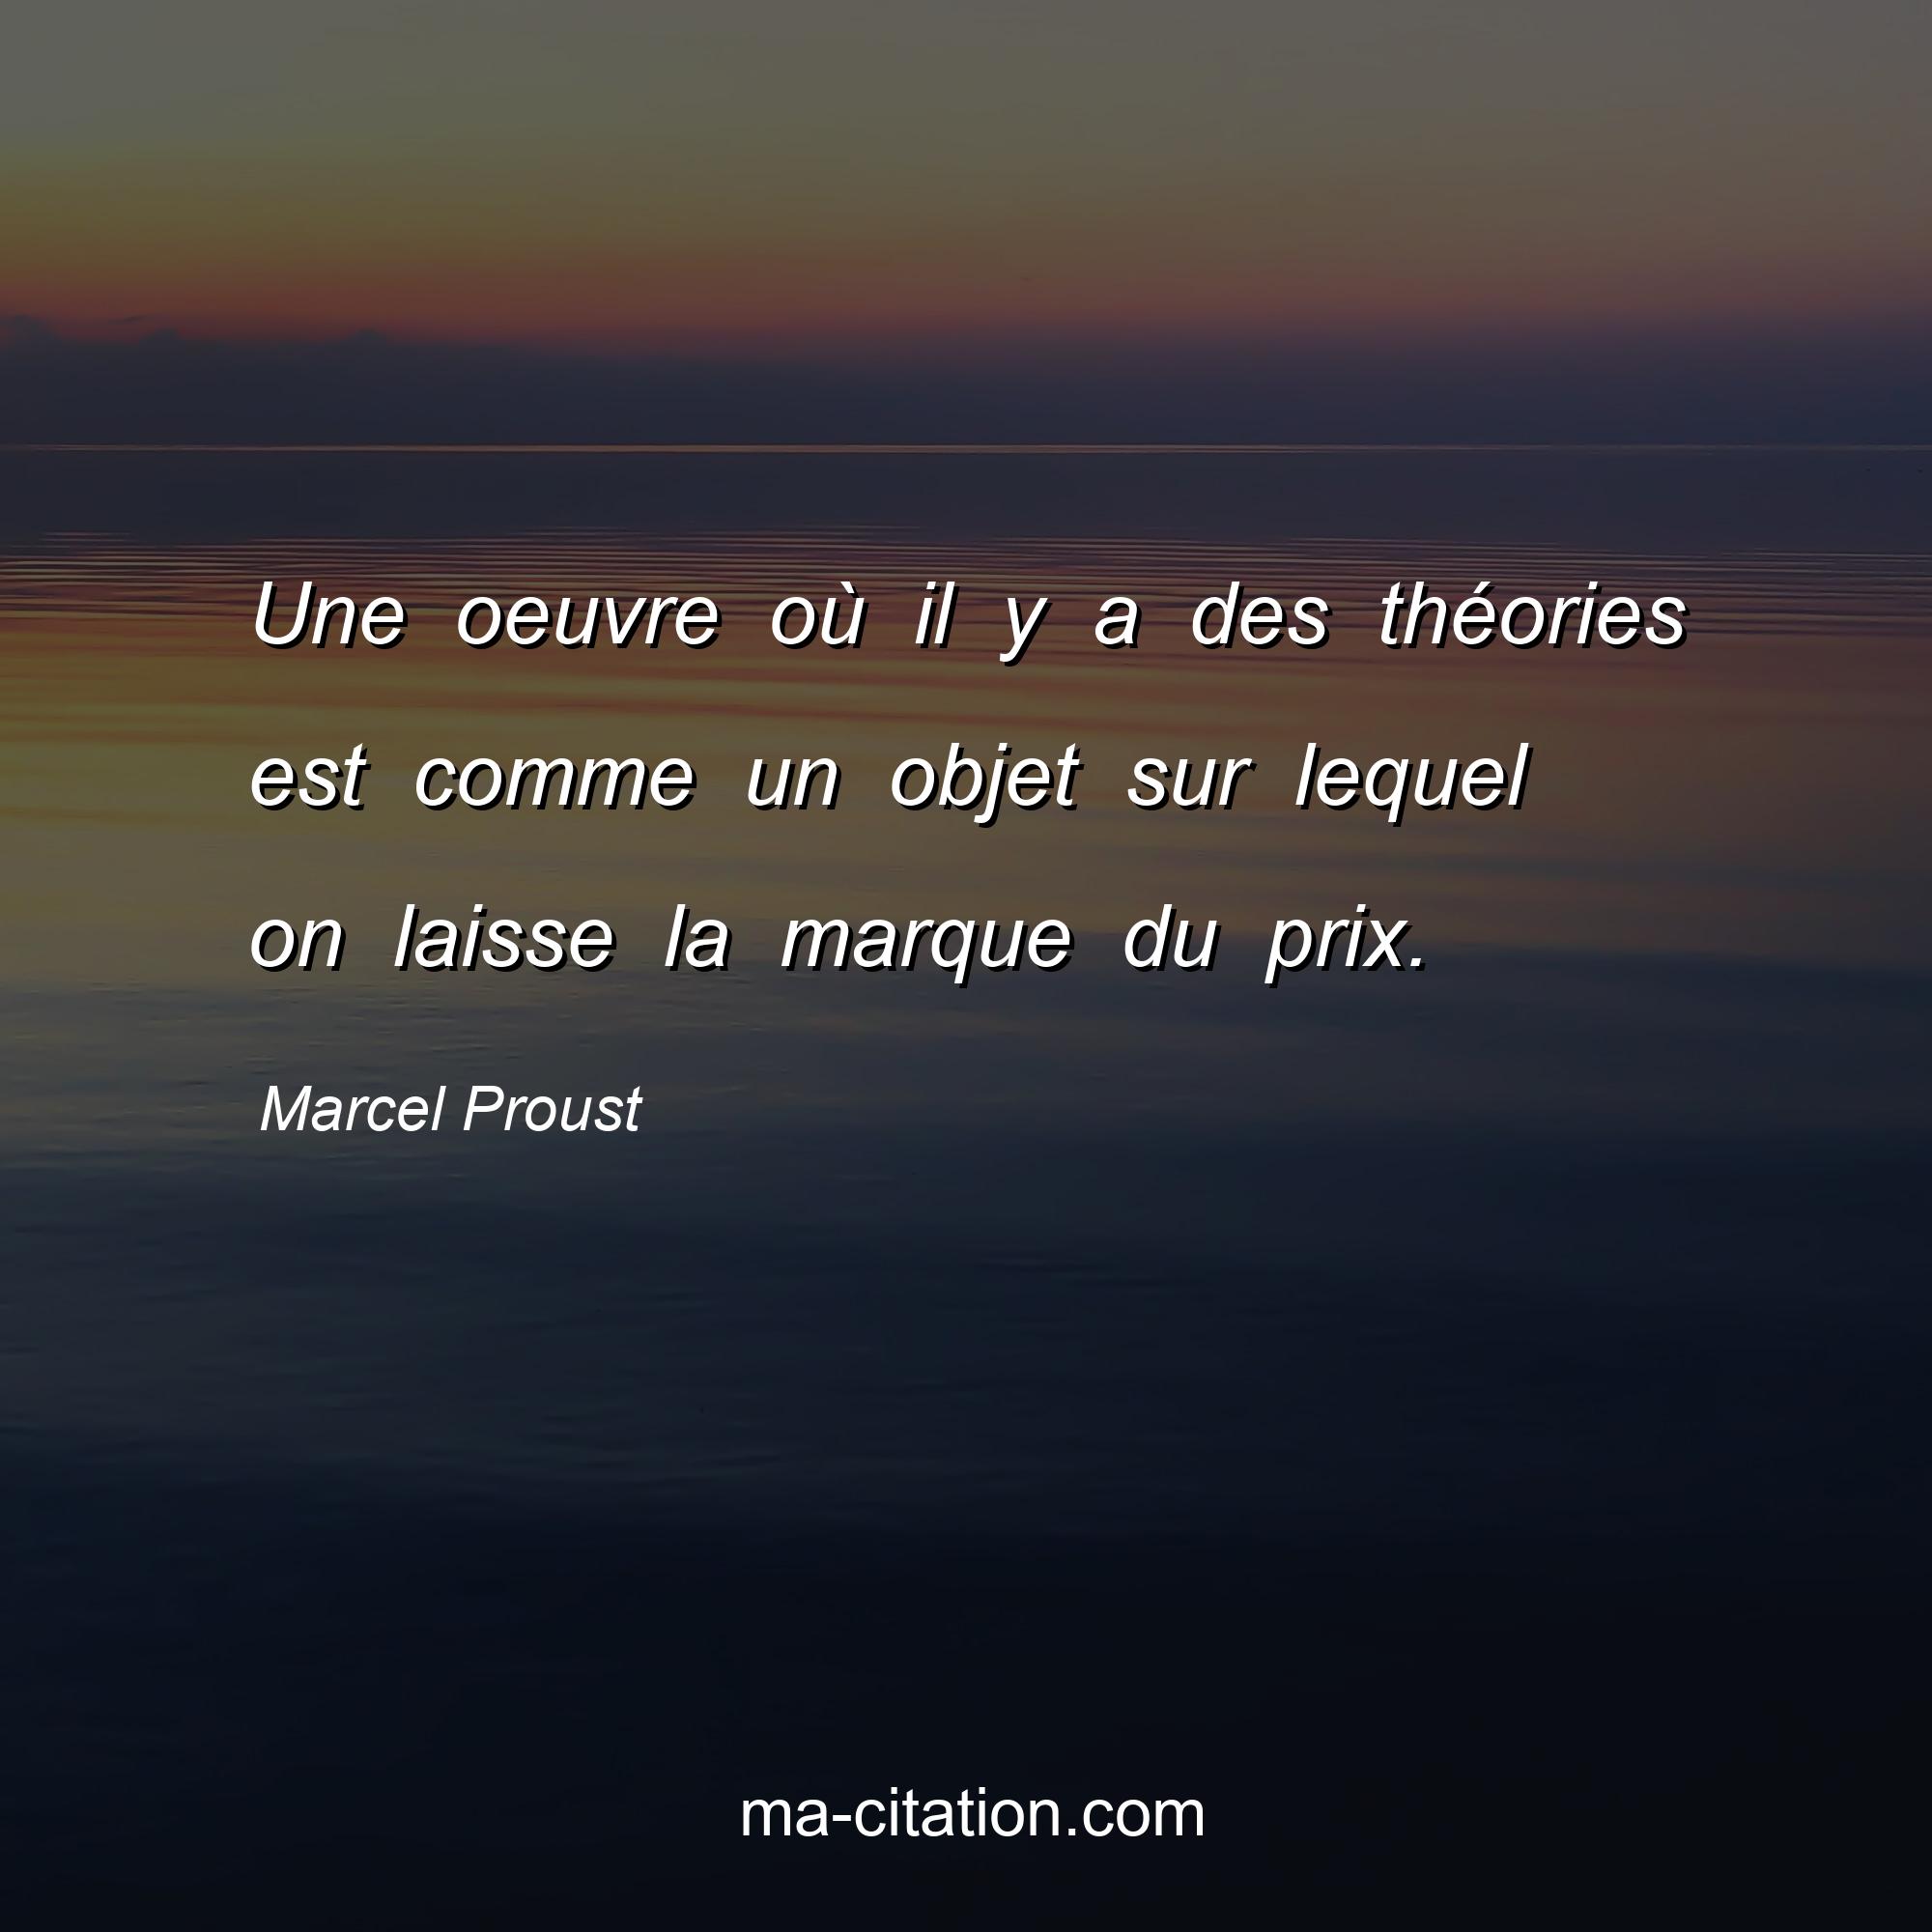 Marcel Proust : Une oeuvre où il y a des théories est comme un objet sur lequel on laisse la marque du prix.